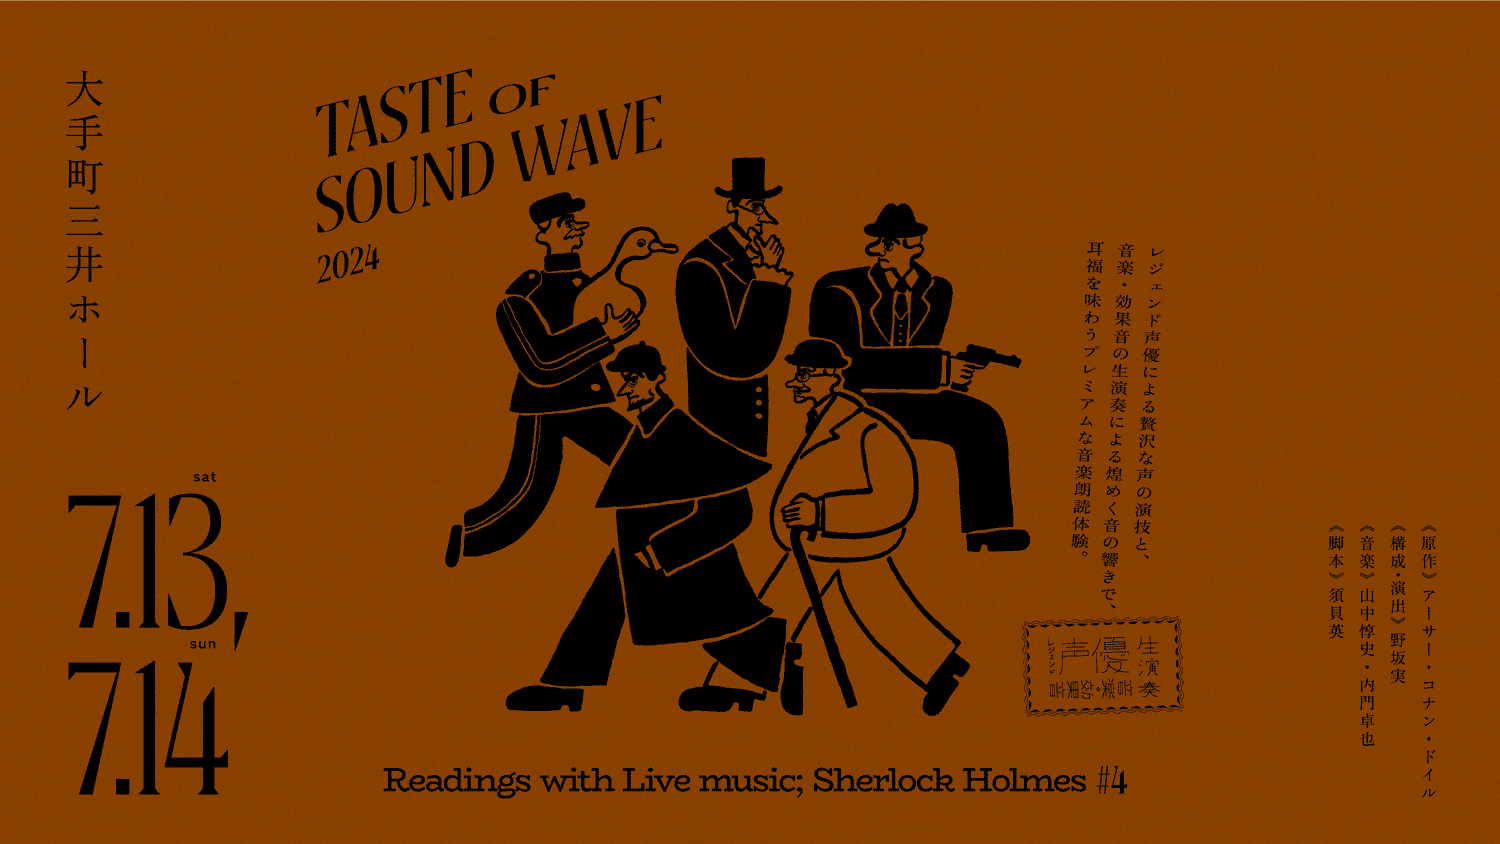 ノサカラボ | TASTE OF SOUND WAVE ”Readings with Live music; Sherlock Holmes #4